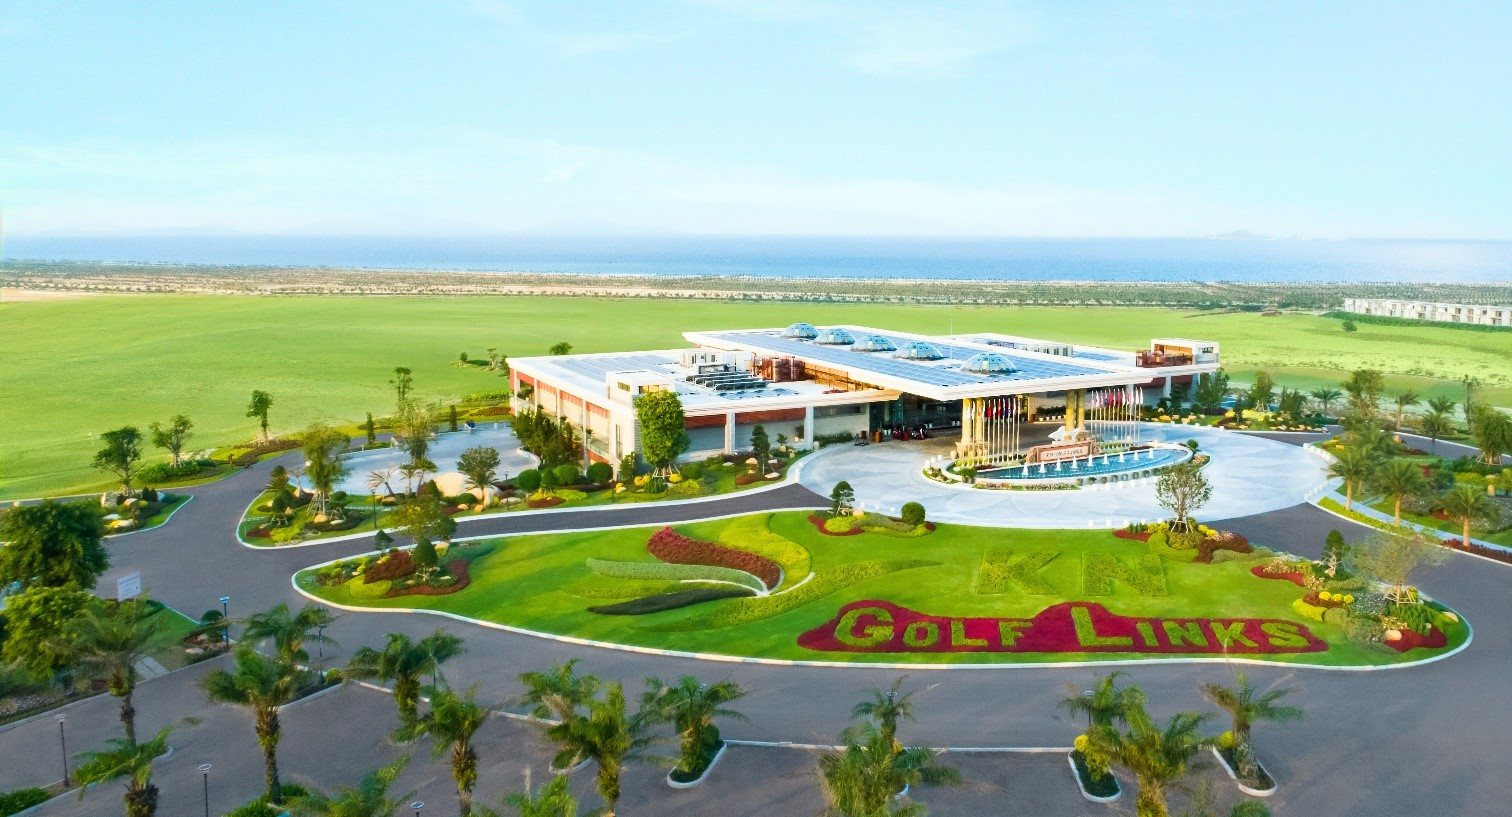 Giải Golf hạng nhất Châu Á - International Series Vietnam 2023 đã sẵn sàng khởi tranh tại sân KN Golf Links Cam Ranh